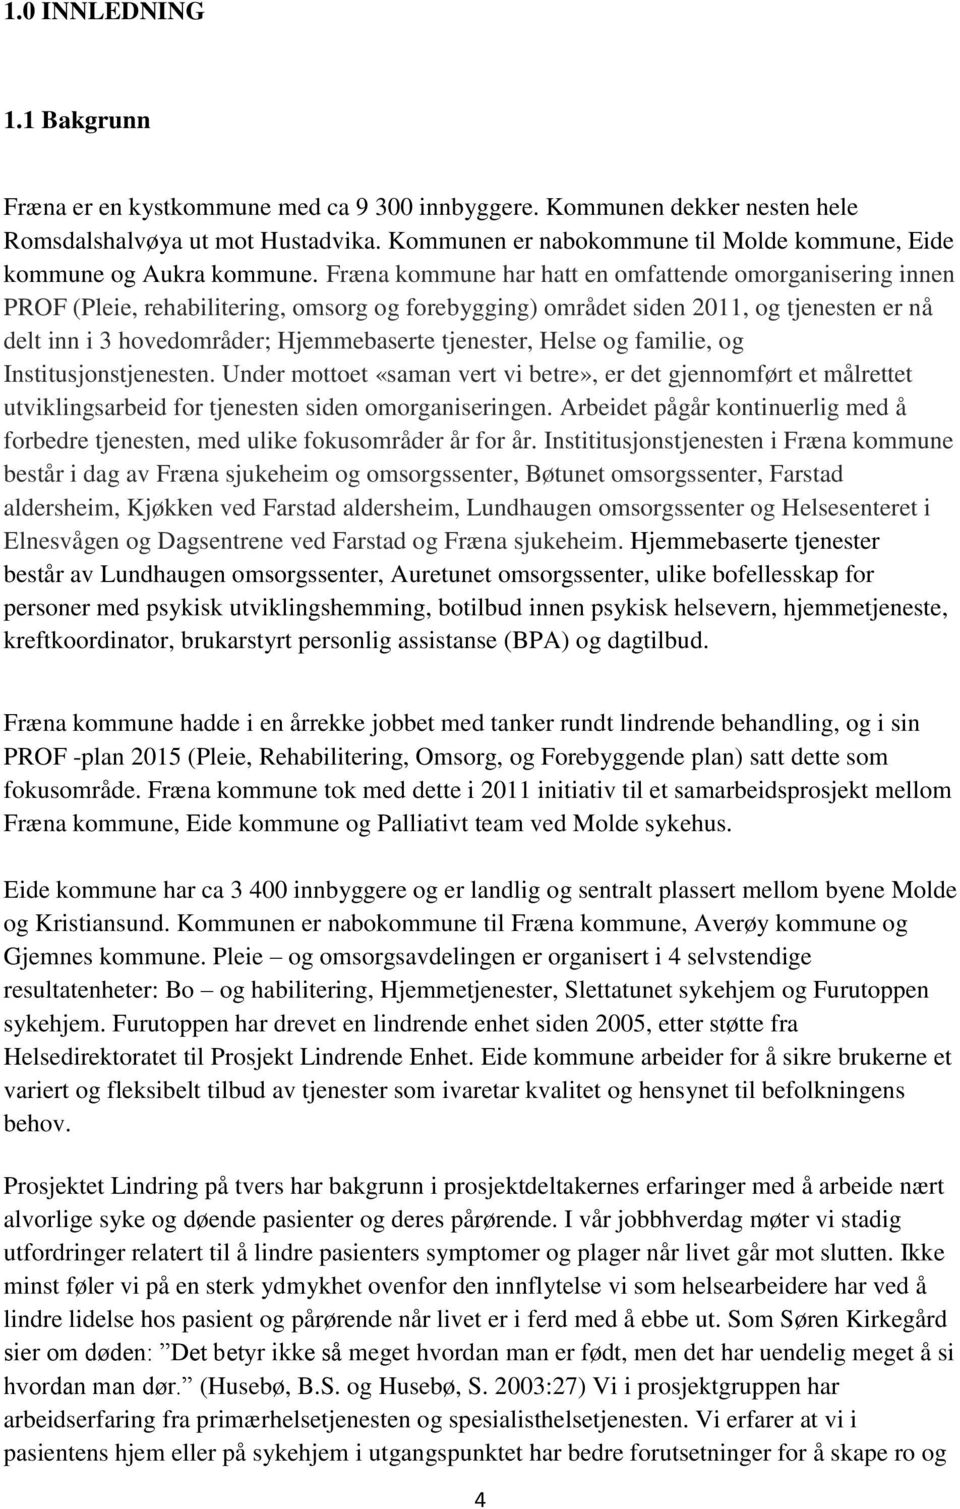 Fræna kommune har hatt en omfattende omorganisering innen PROF (Pleie, rehabilitering, omsorg og forebygging) området siden 2011, og tjenesten er nå delt inn i 3 hovedområder; Hjemmebaserte